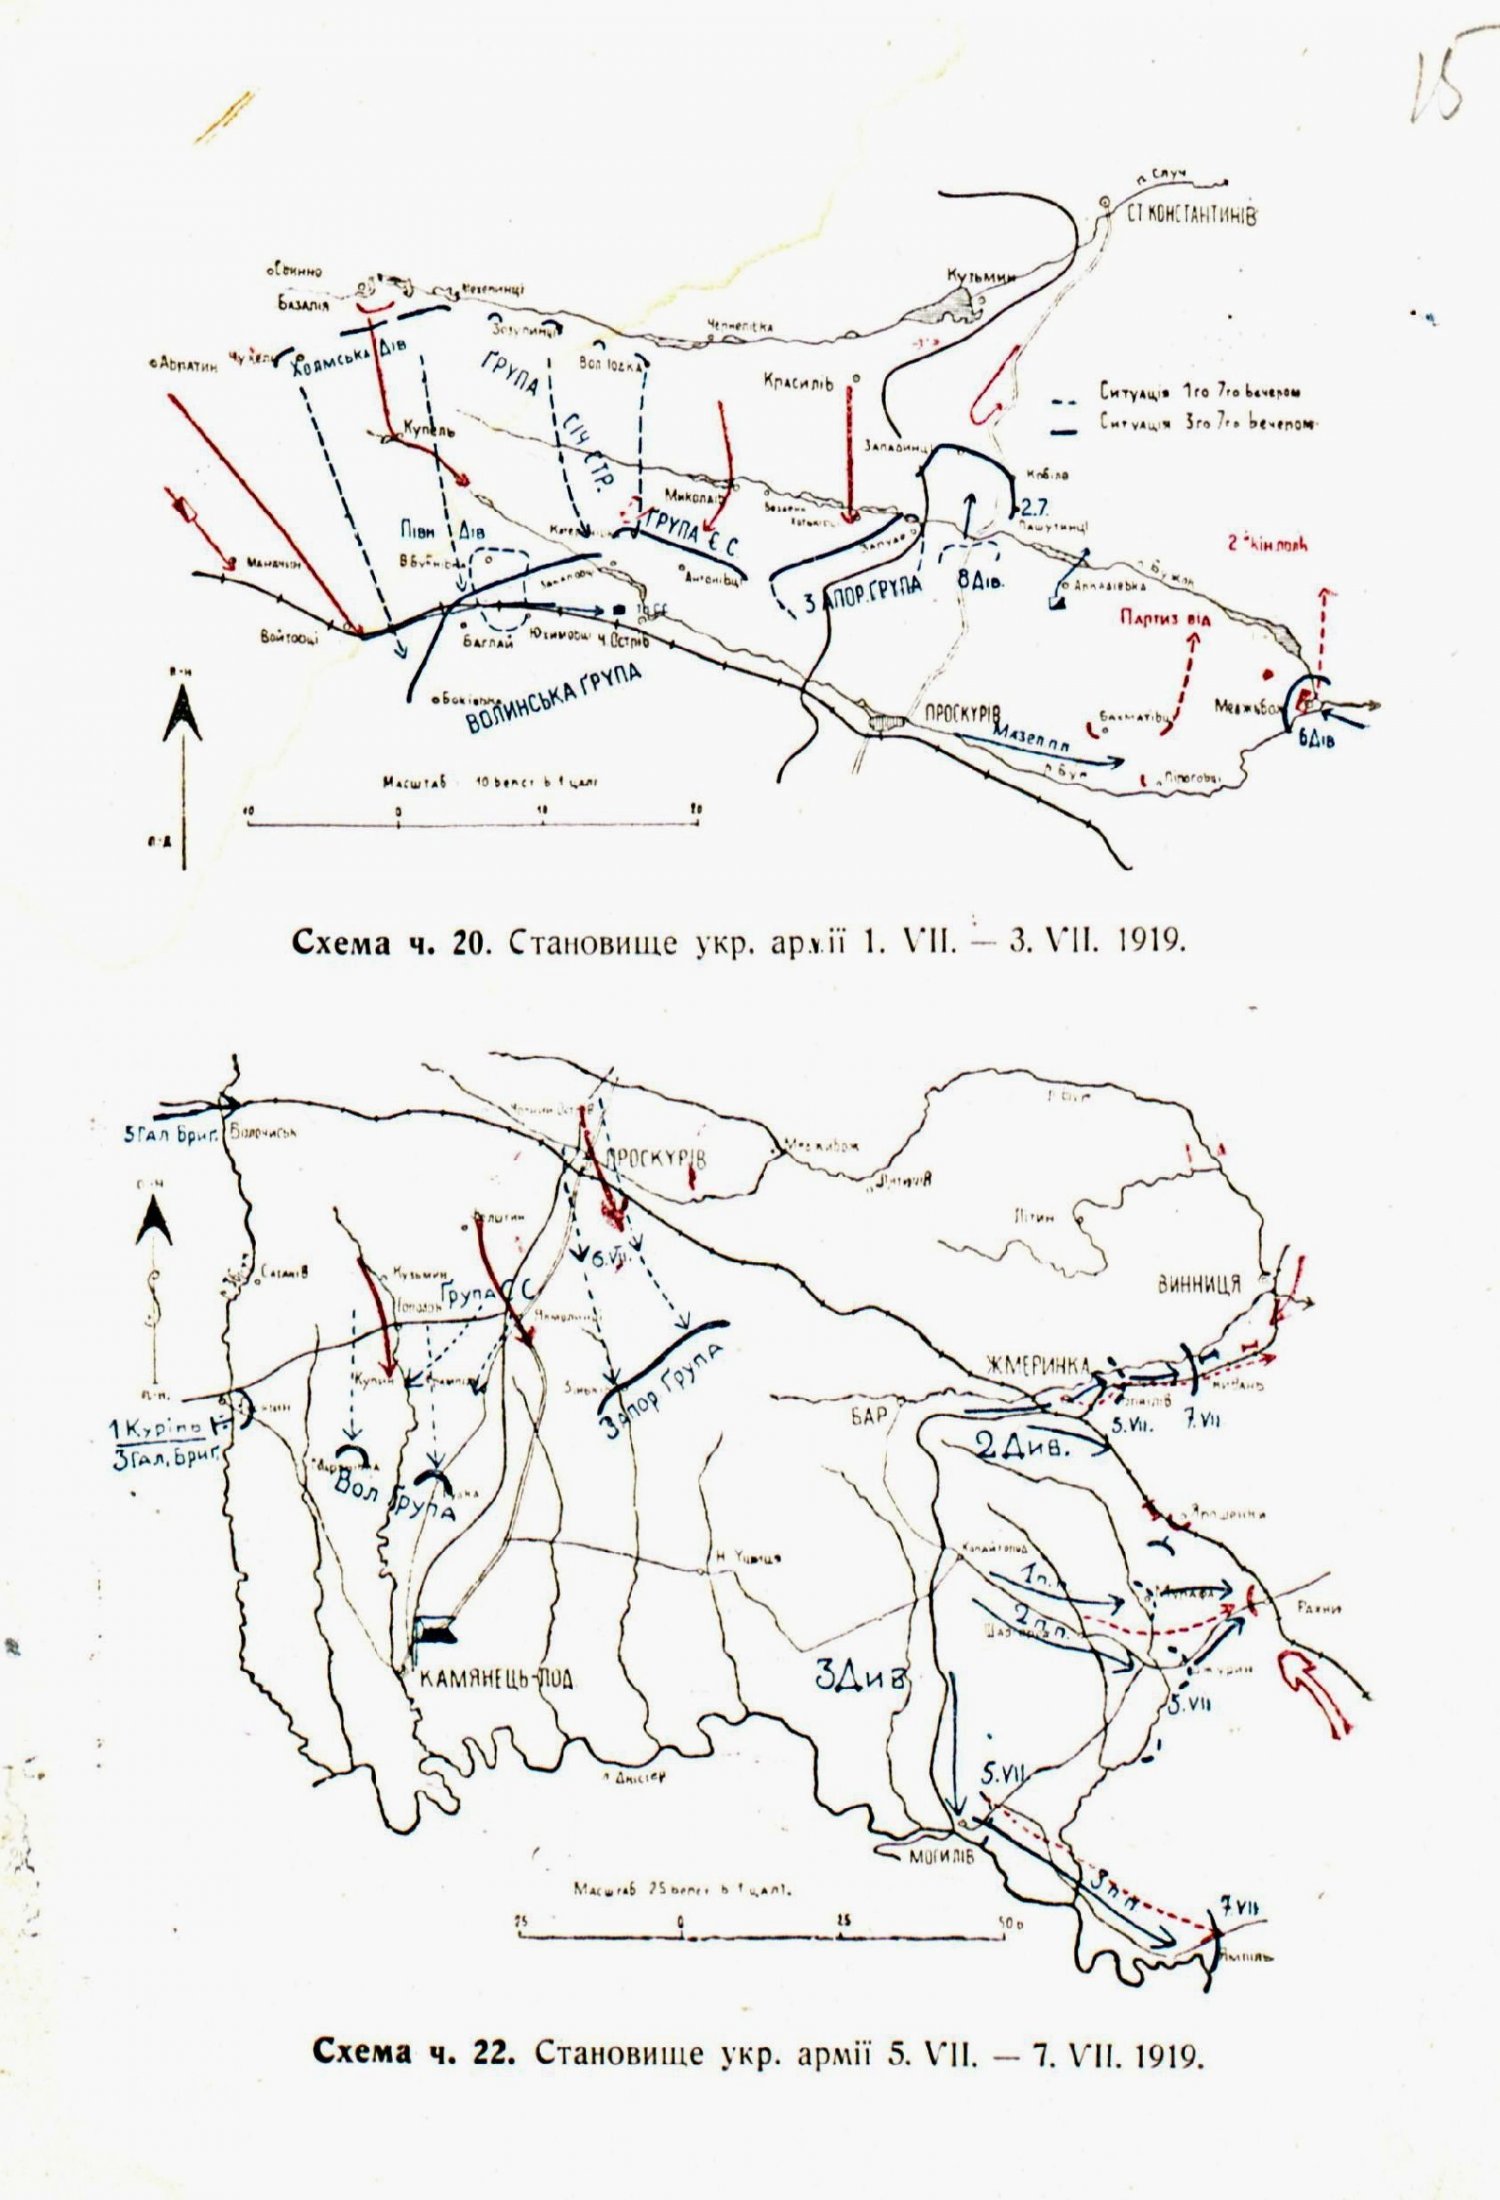 Мапи становища на фронті дієвої армії Української Народної Республіки. 20 червня - 5 липня 1919 р.